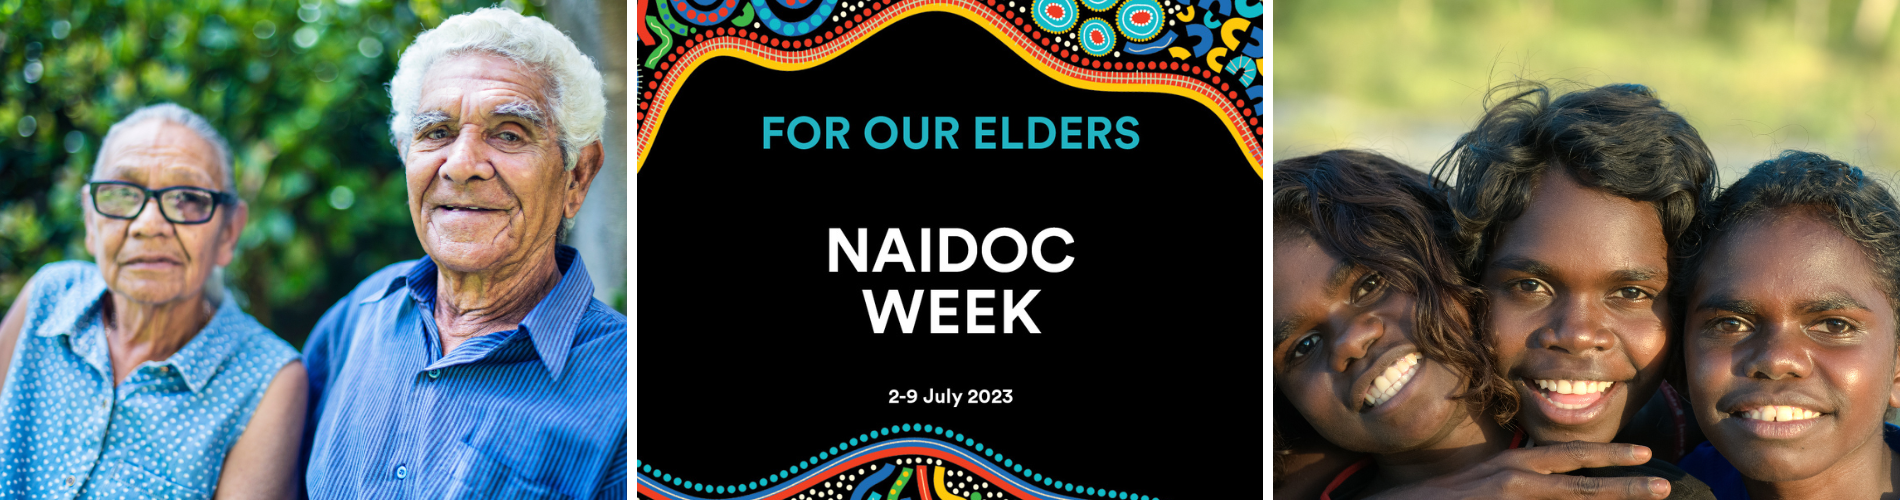 NAIDOC week blog banner.png